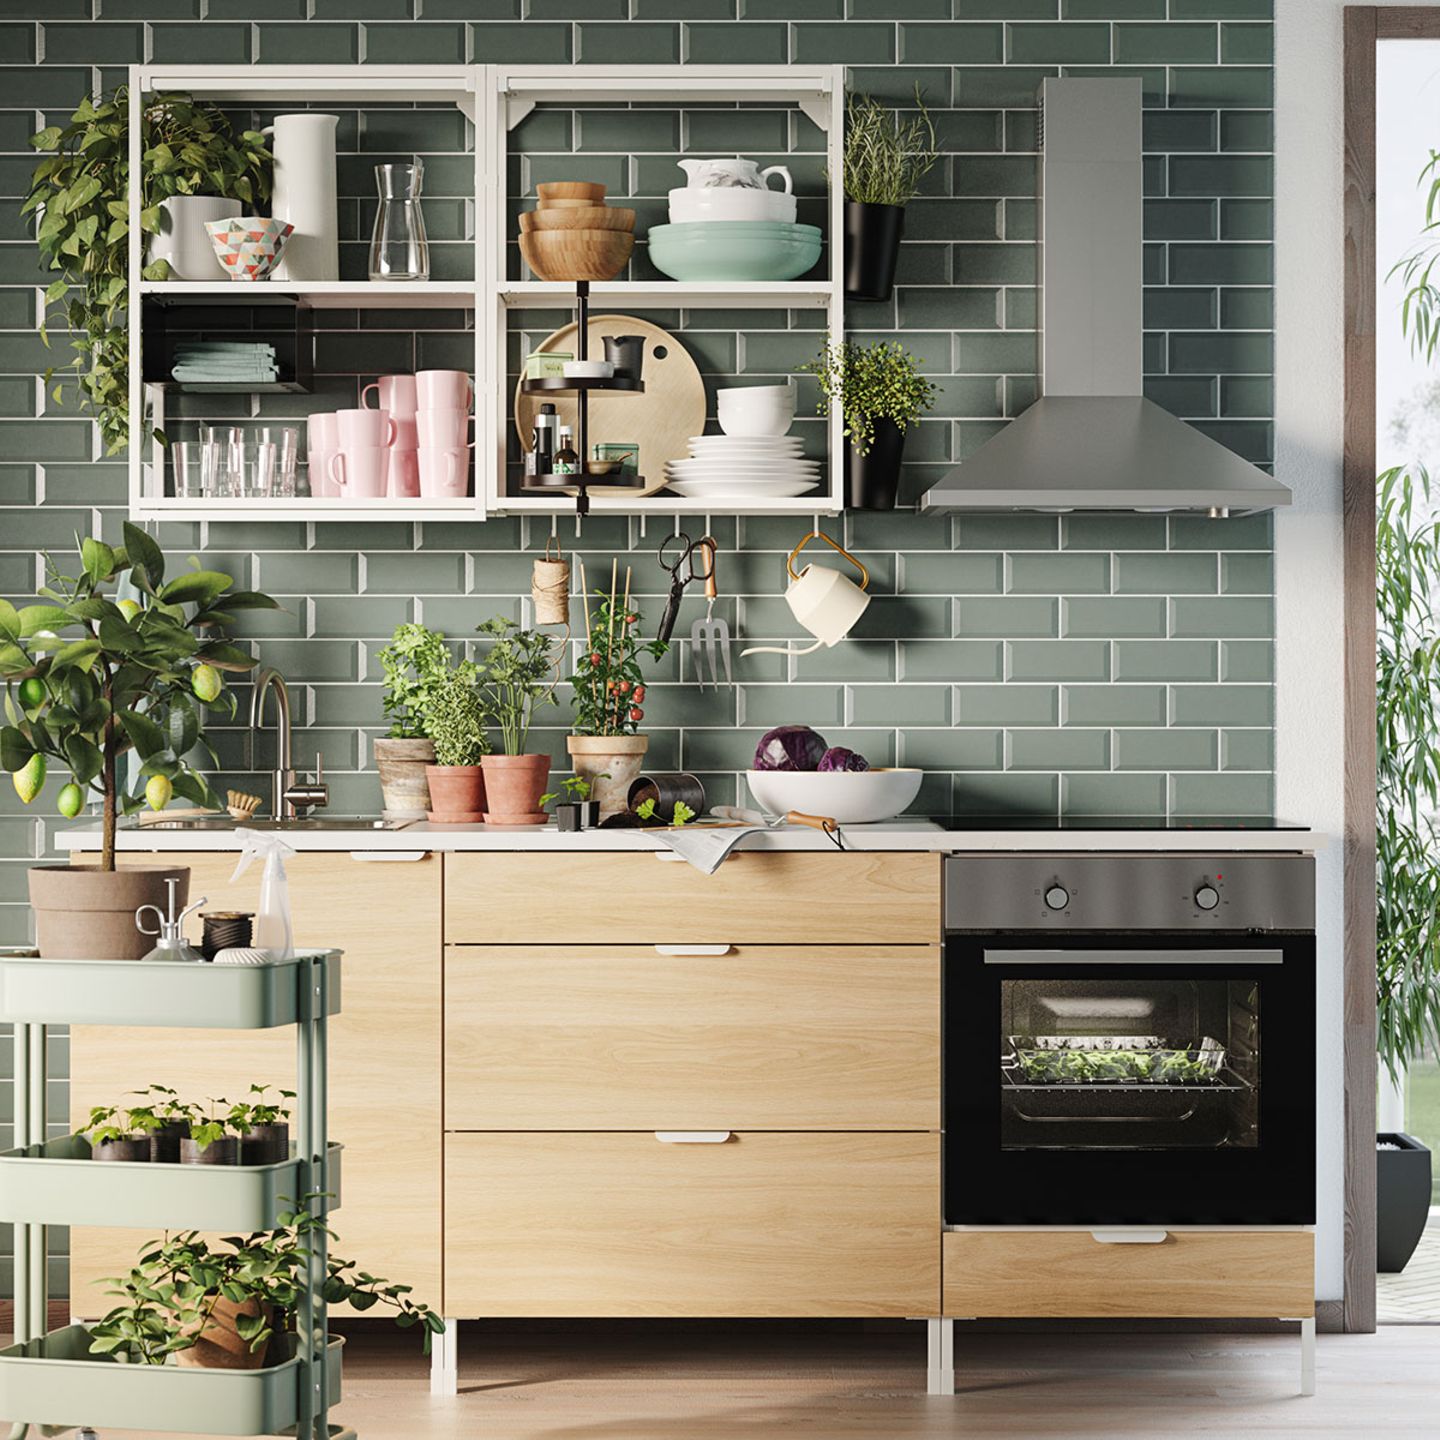 Ikea-Katalog 2021: Küchensystem "Enhet"